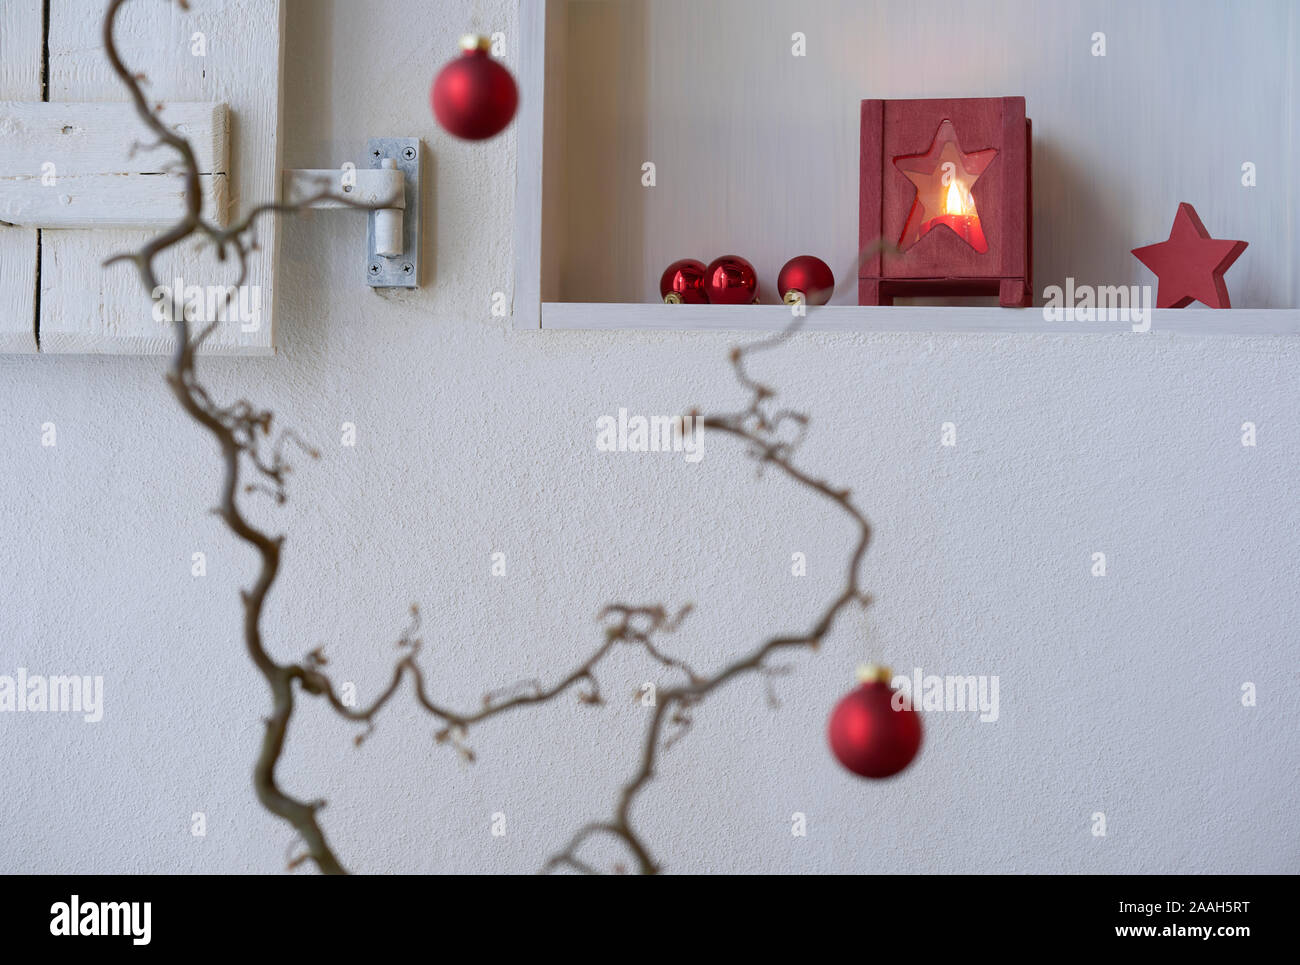 Unsharp rojo bolas de navidad en una rama delante de un estante con decoración de Navidad roja, linterna con luz de velas, estrella roja Foto de stock